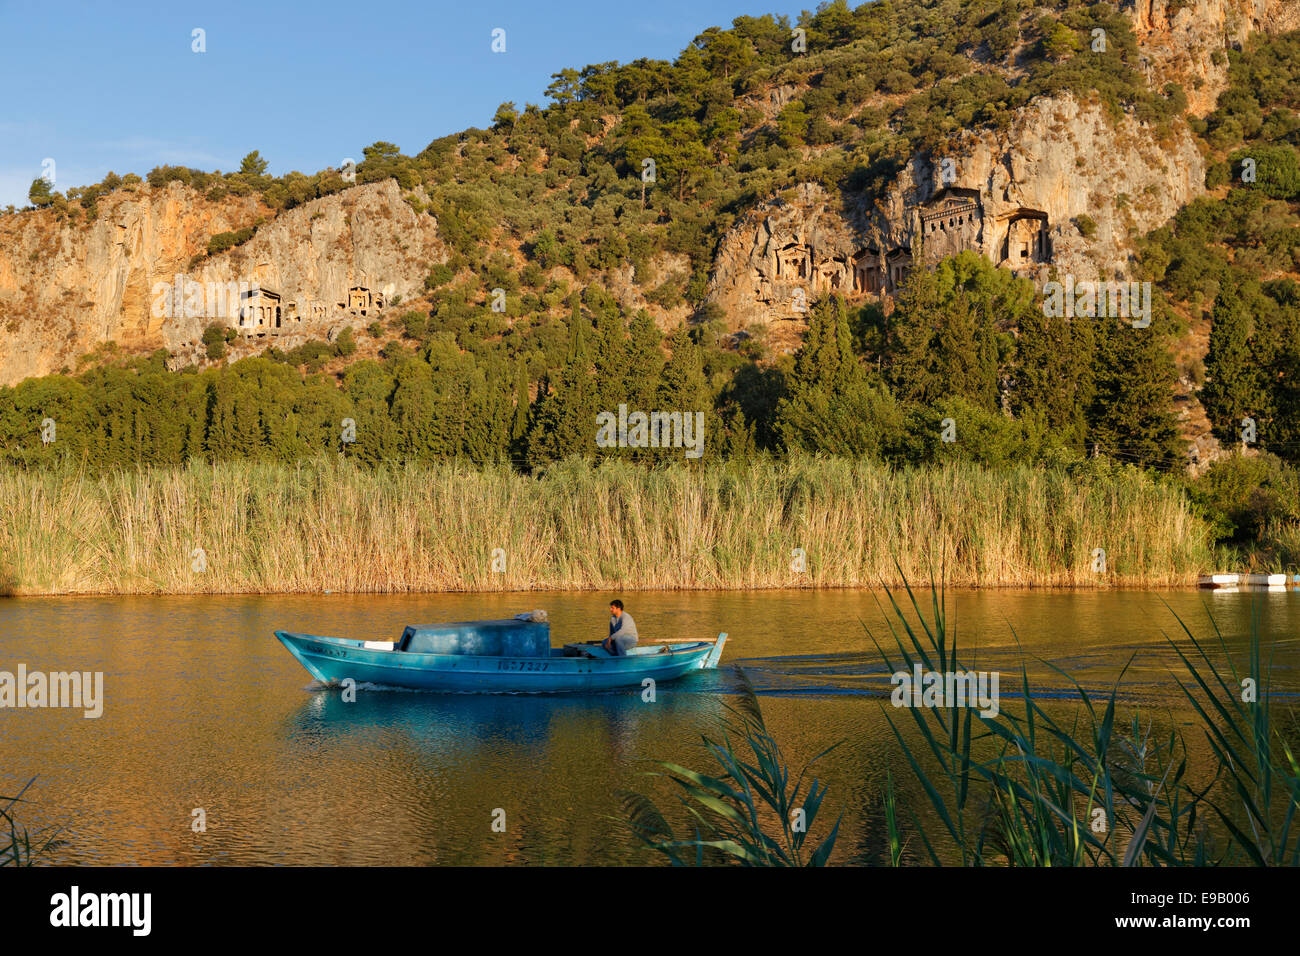 Las tumbas de roca de Kaunos, temprano por la mañana en el río Dalyan Dalyan, provincia de Muğla, Costa turquesa o Riviera turca, Egeo Foto de stock